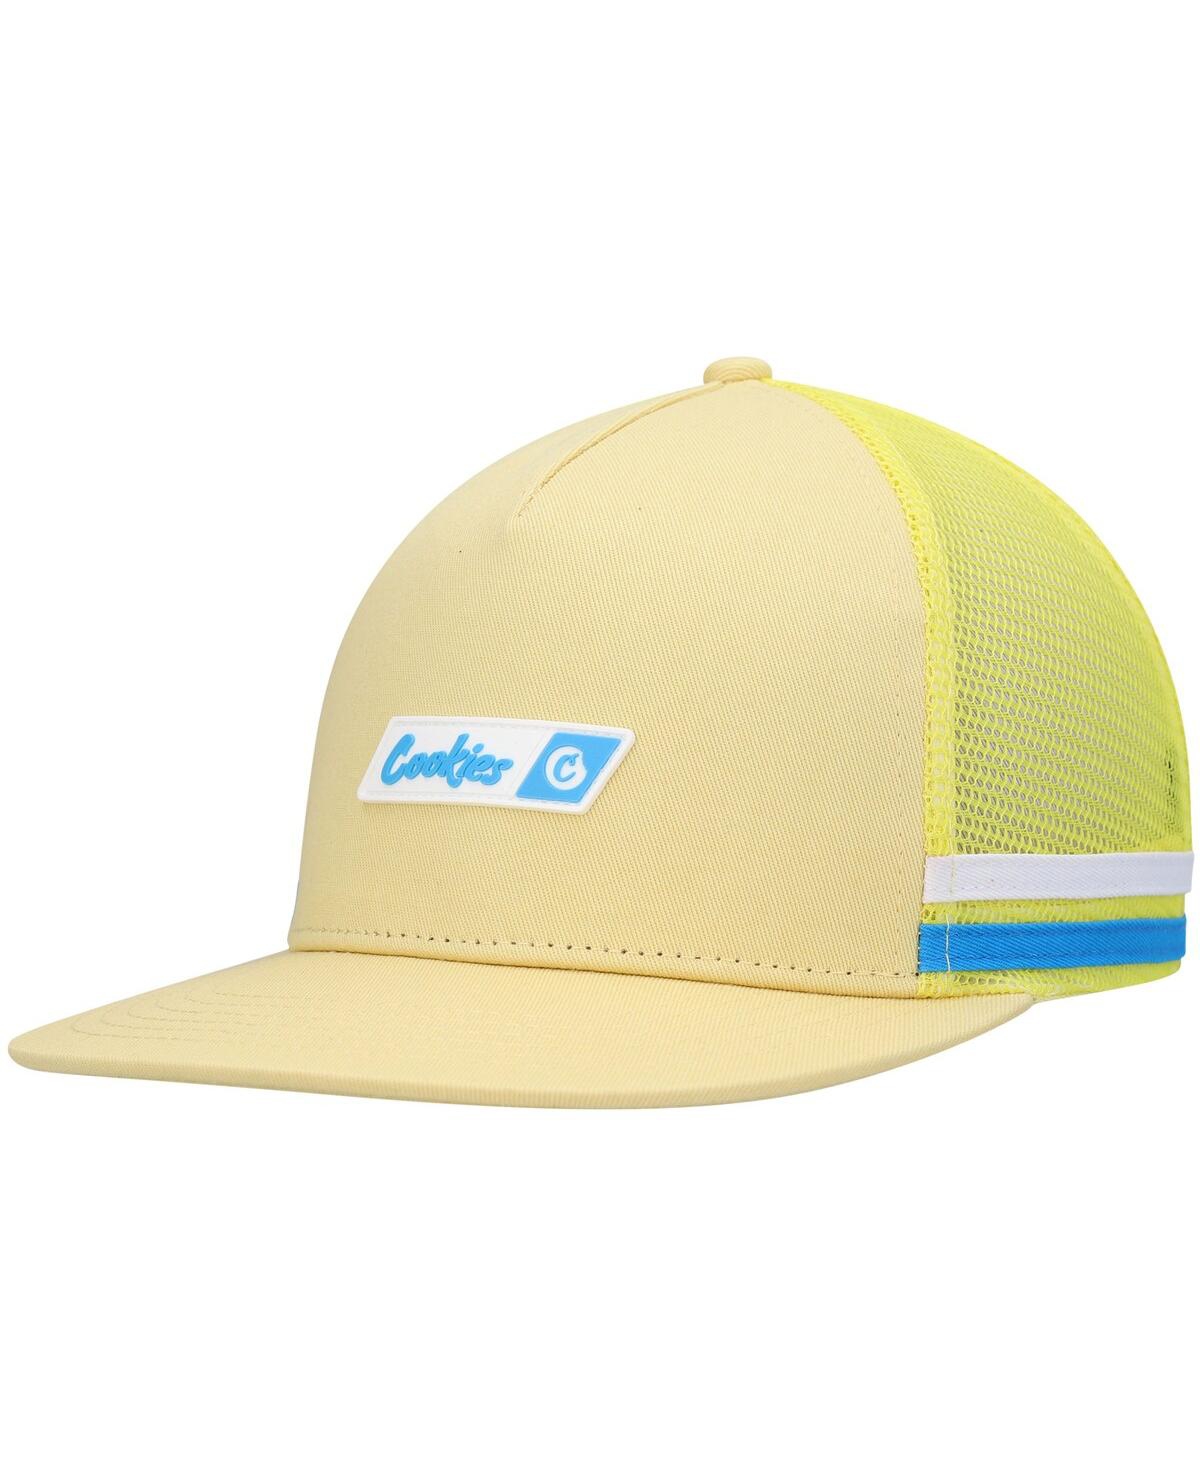 Shop Cookies Men's  Yellow Bal Harbor Trucker Snapback Hat